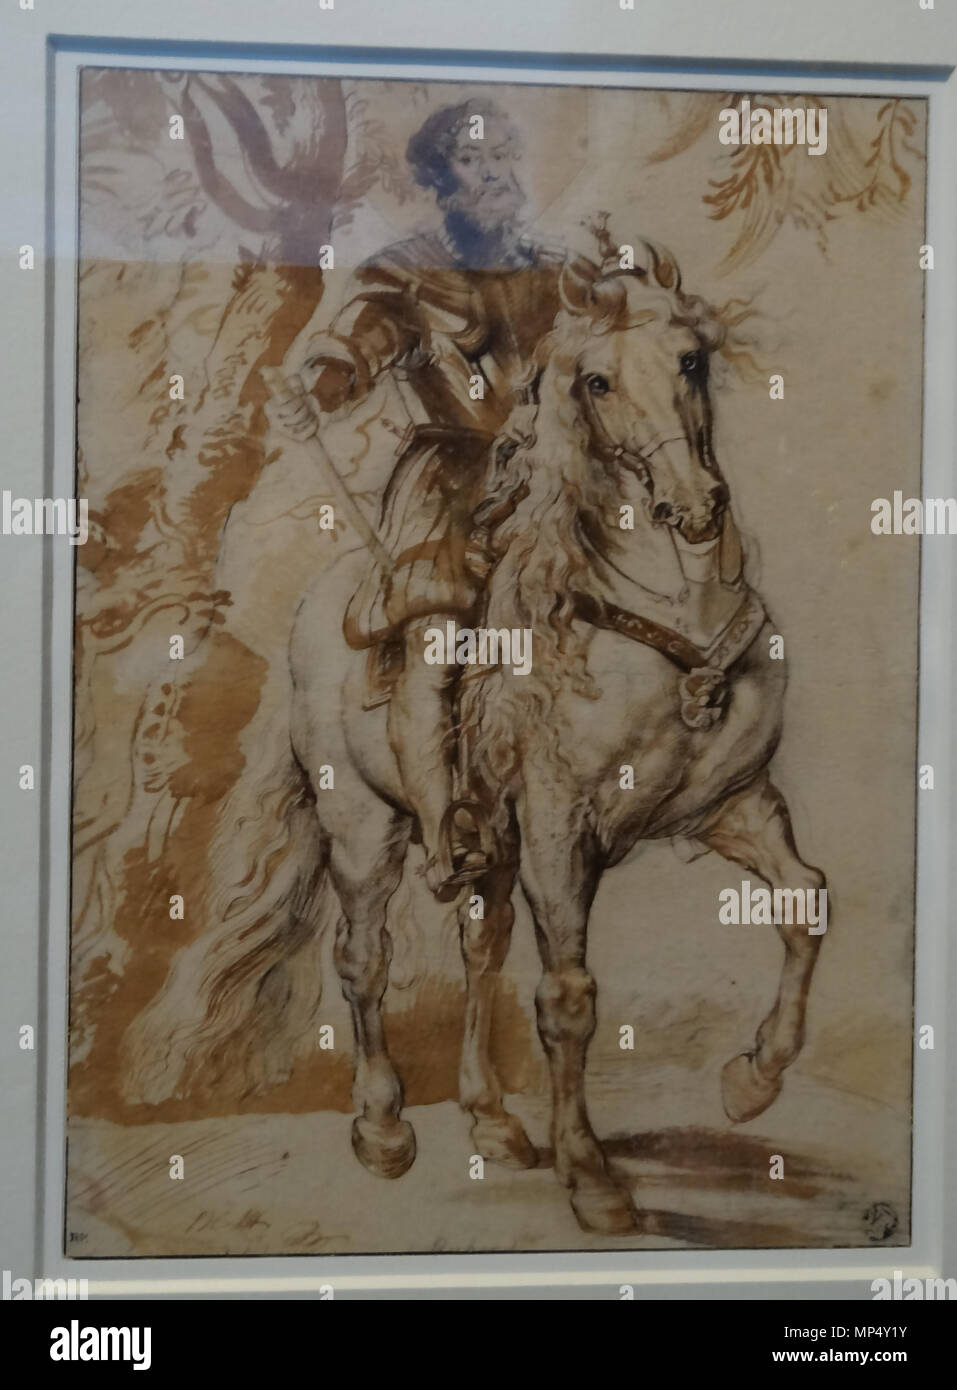 826 Louvre-Lens - L'Europe de Rubens - 017 - Francisco de Sandoval y Rojas, duc de Lerme, à cheval Stock Photo